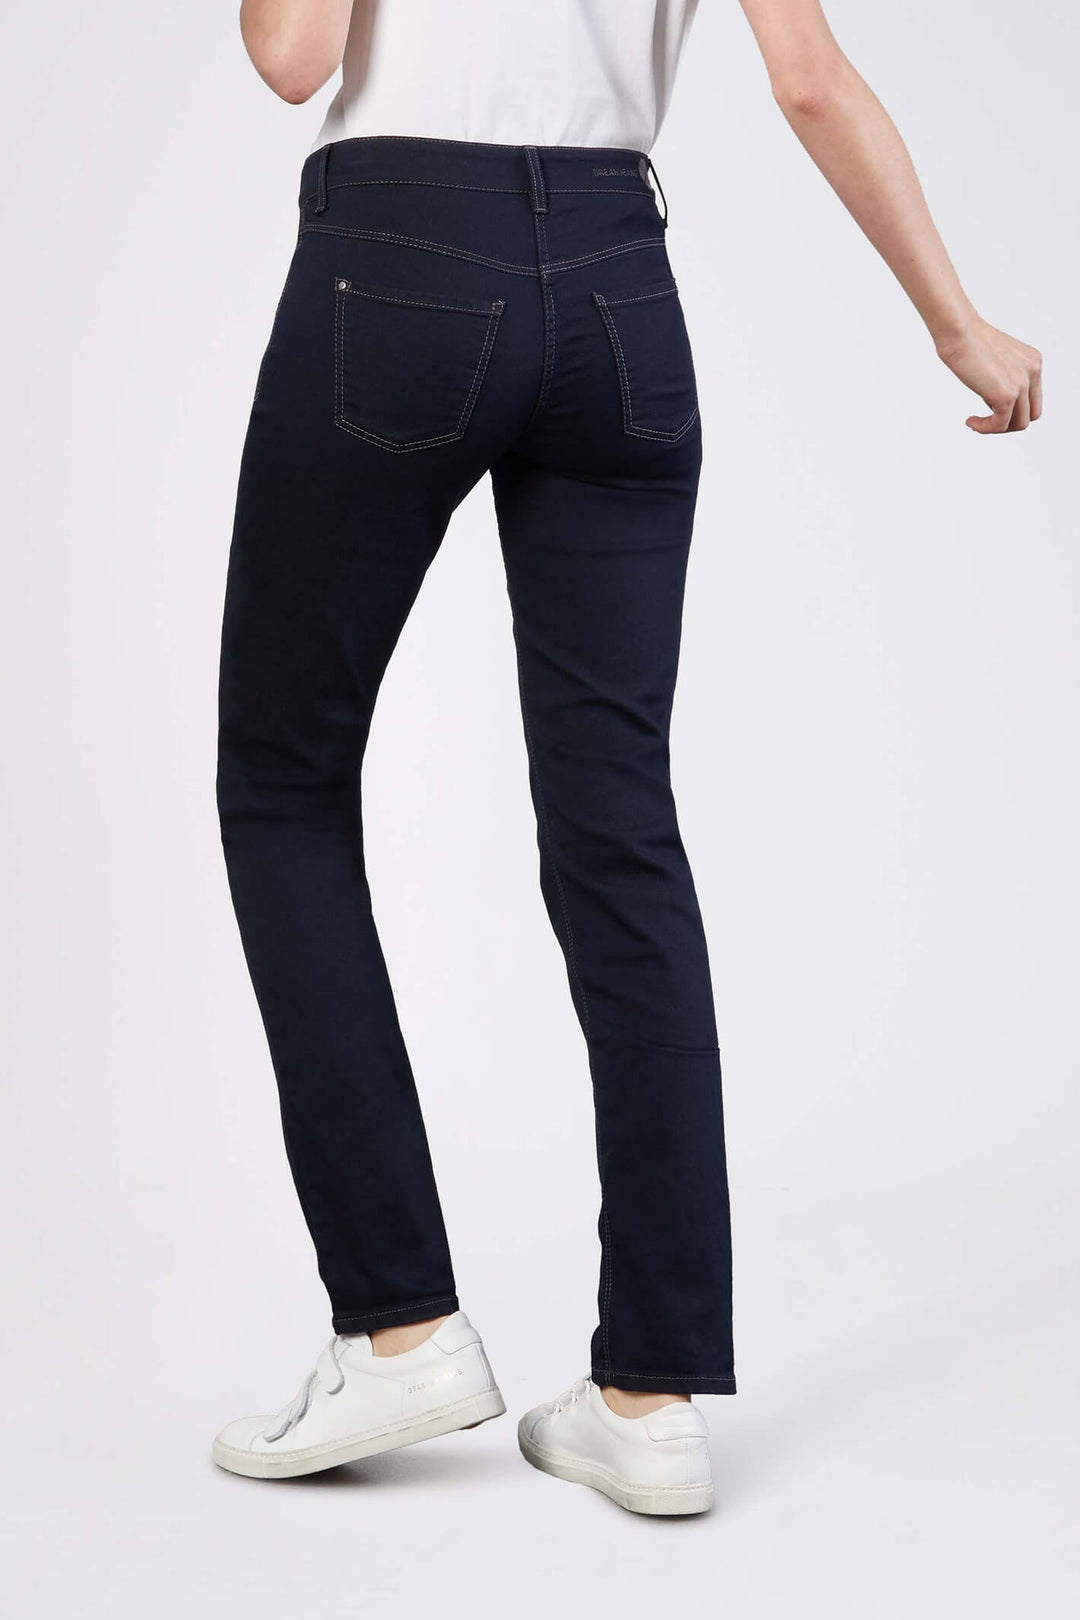 Mac Dream Jeans 5401-90 0355L Dark Denim - Olivia Grace Fashion